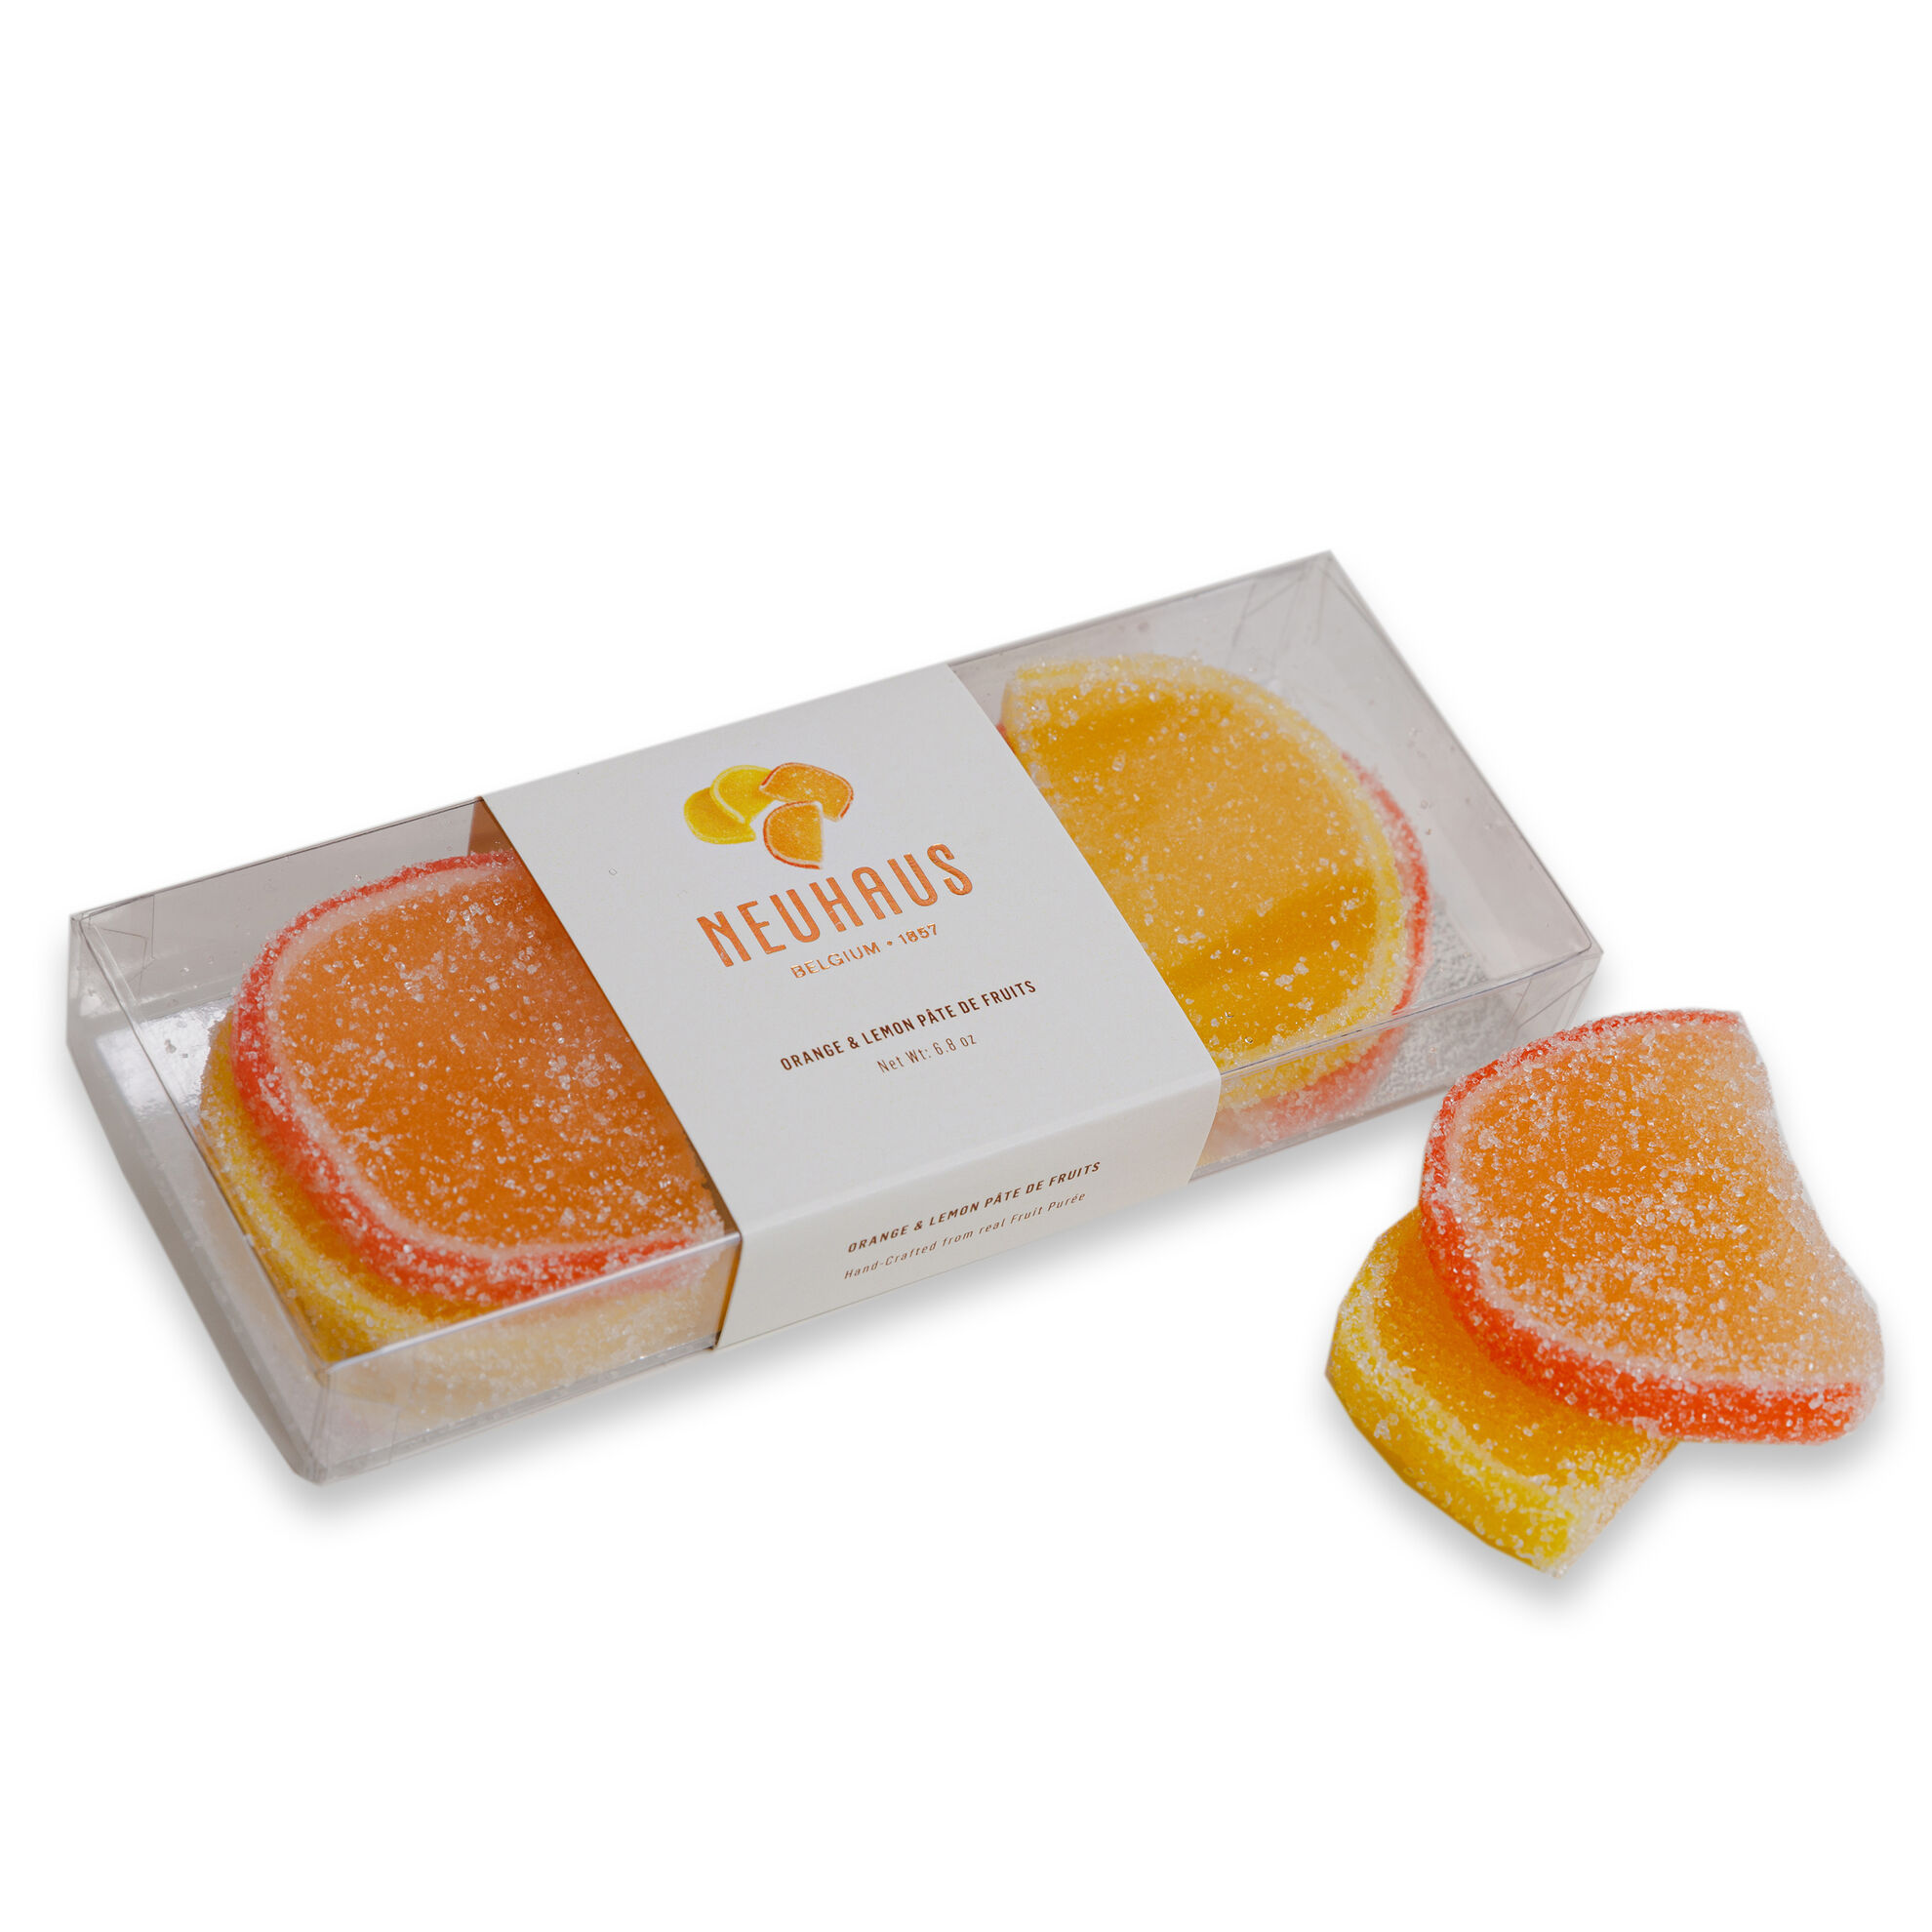 Pâté de Fruits - Lemon & Orange Fruit Slices image number 01